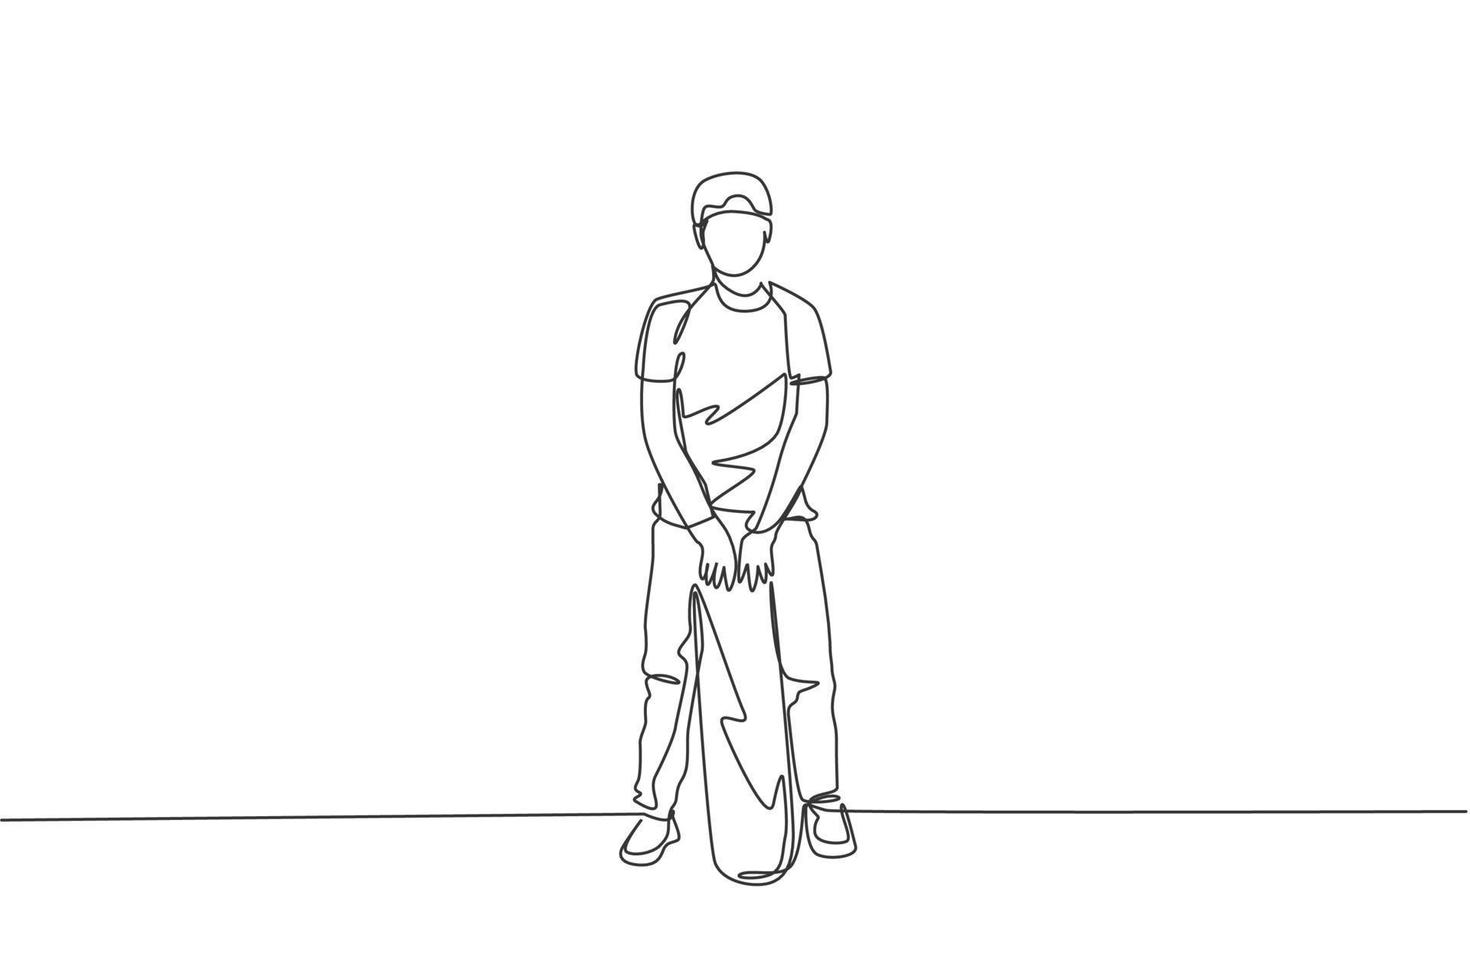 único desenho de linha contínua do jovem skatista legal segurando skate e pose elegante para mostrar a camisa de vestuário no parque de skate. conceito de esporte ao ar livre. ilustração em vetor design de desenho de uma linha na moda